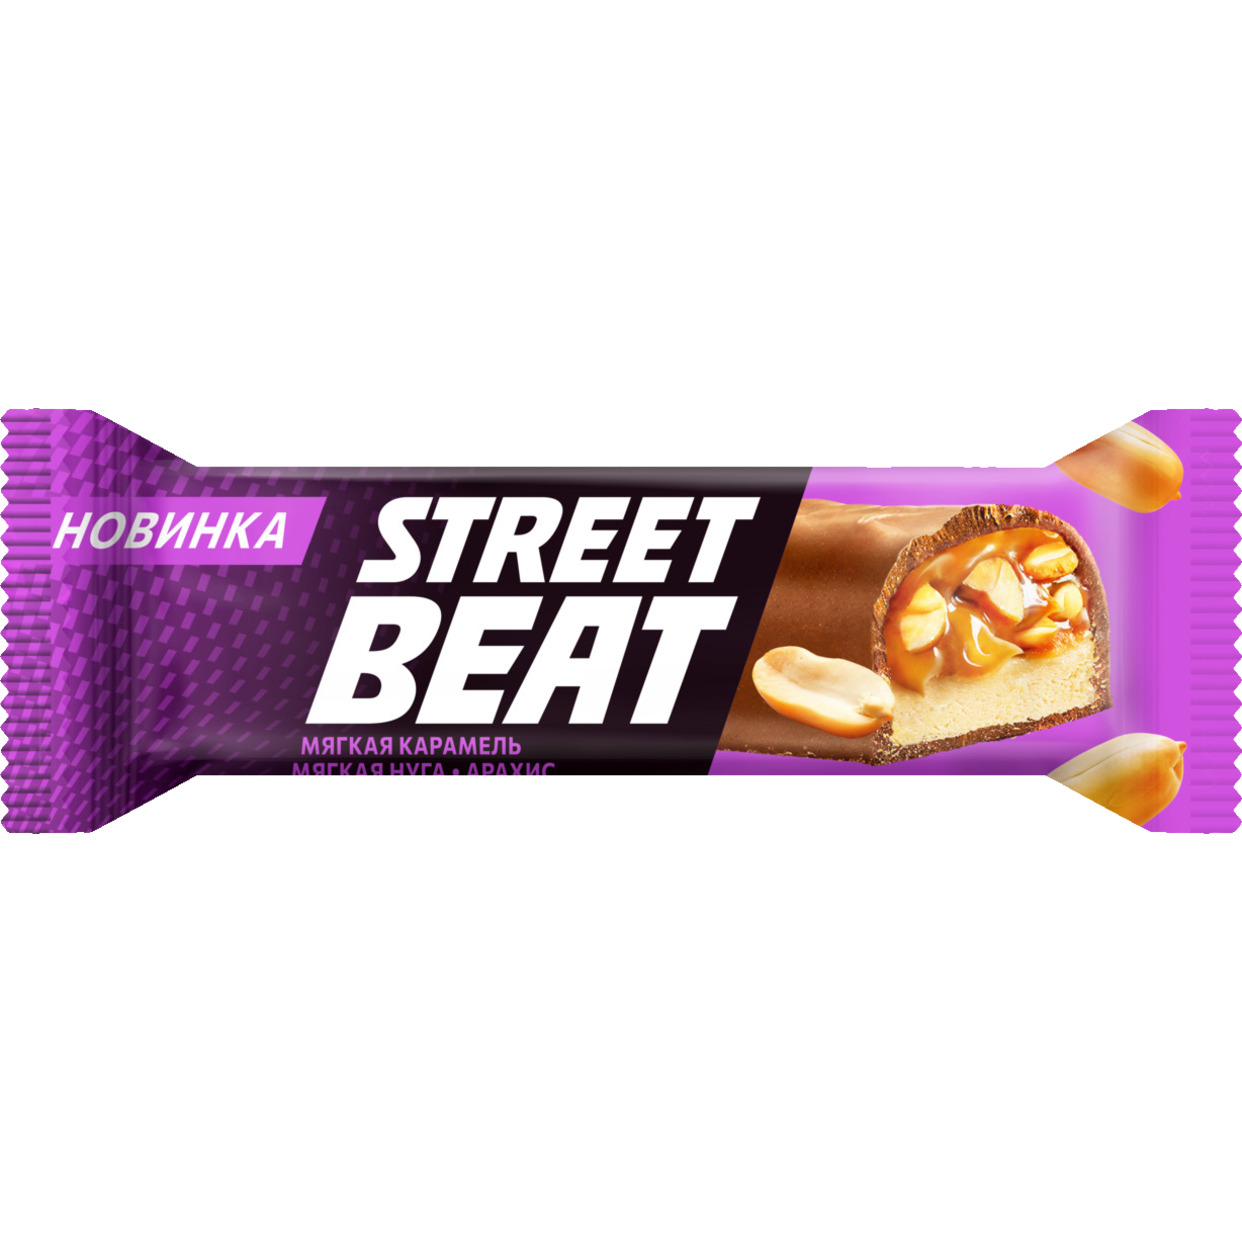 Батончик STREET BEAT с мягкой нугой, арахисом и мягкой карамелью в молочном шоколаде 45г по акции в Пятерочке